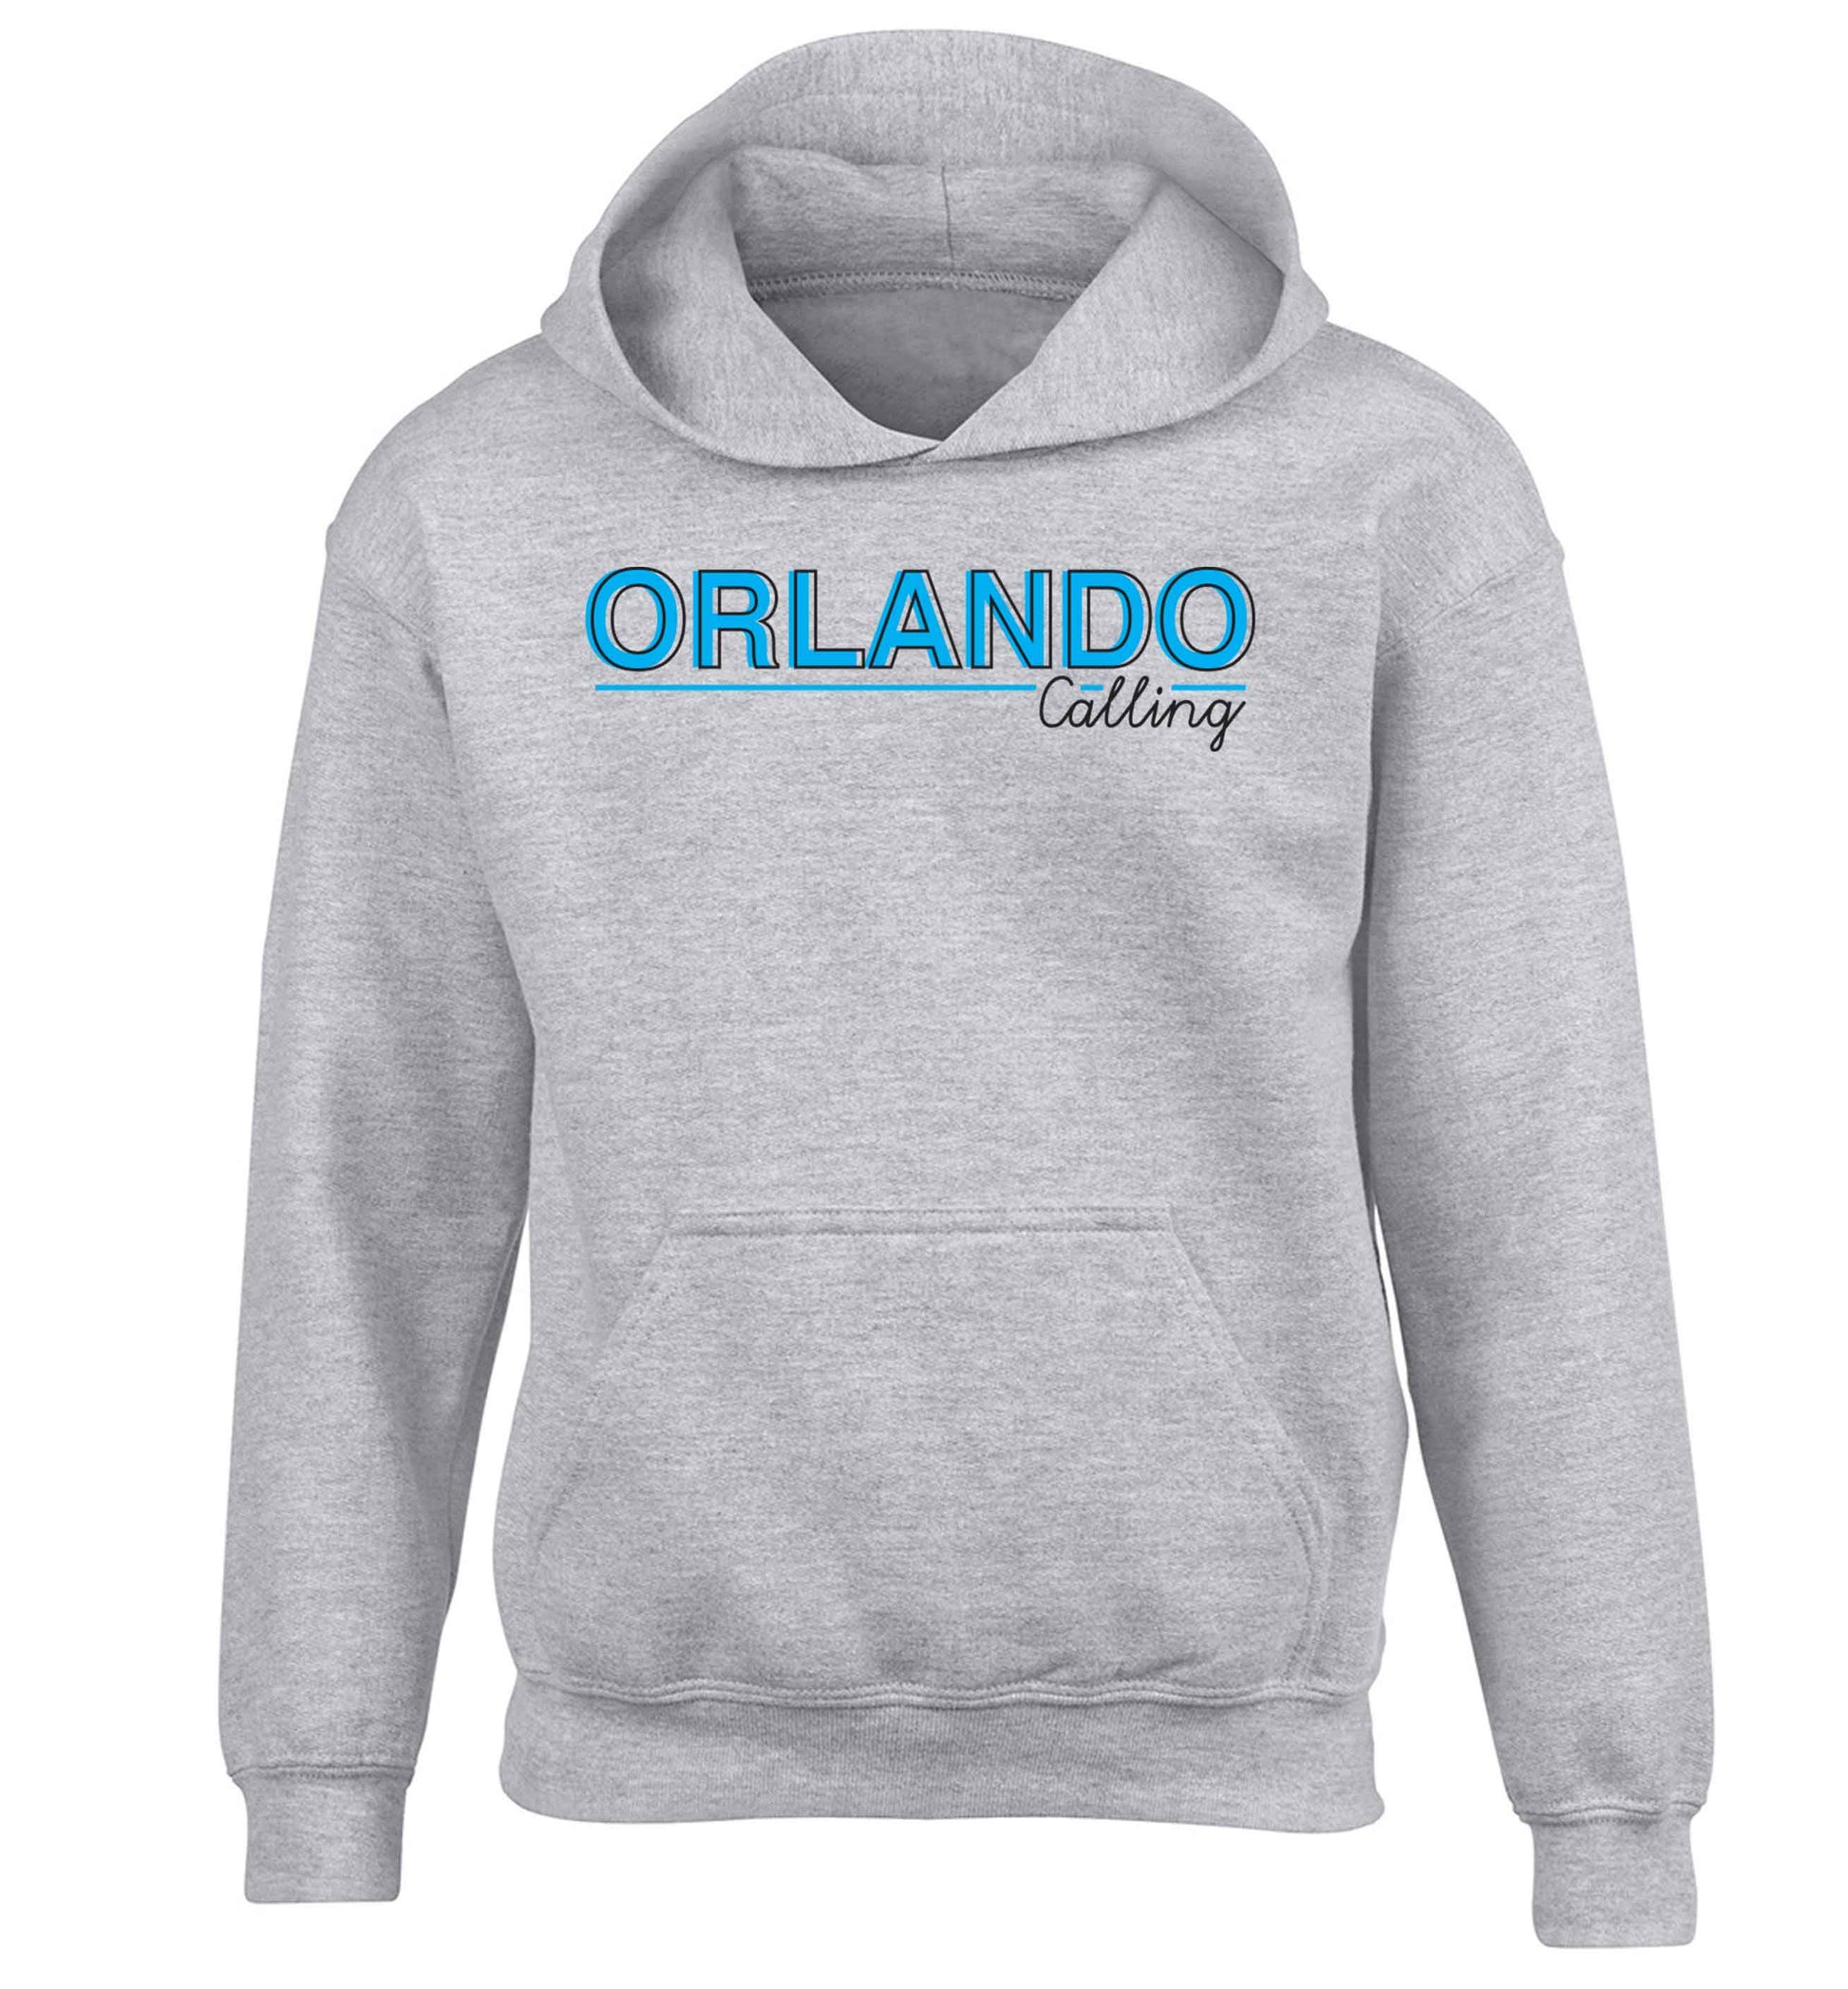 Orlando calling children's grey hoodie 12-13 Years